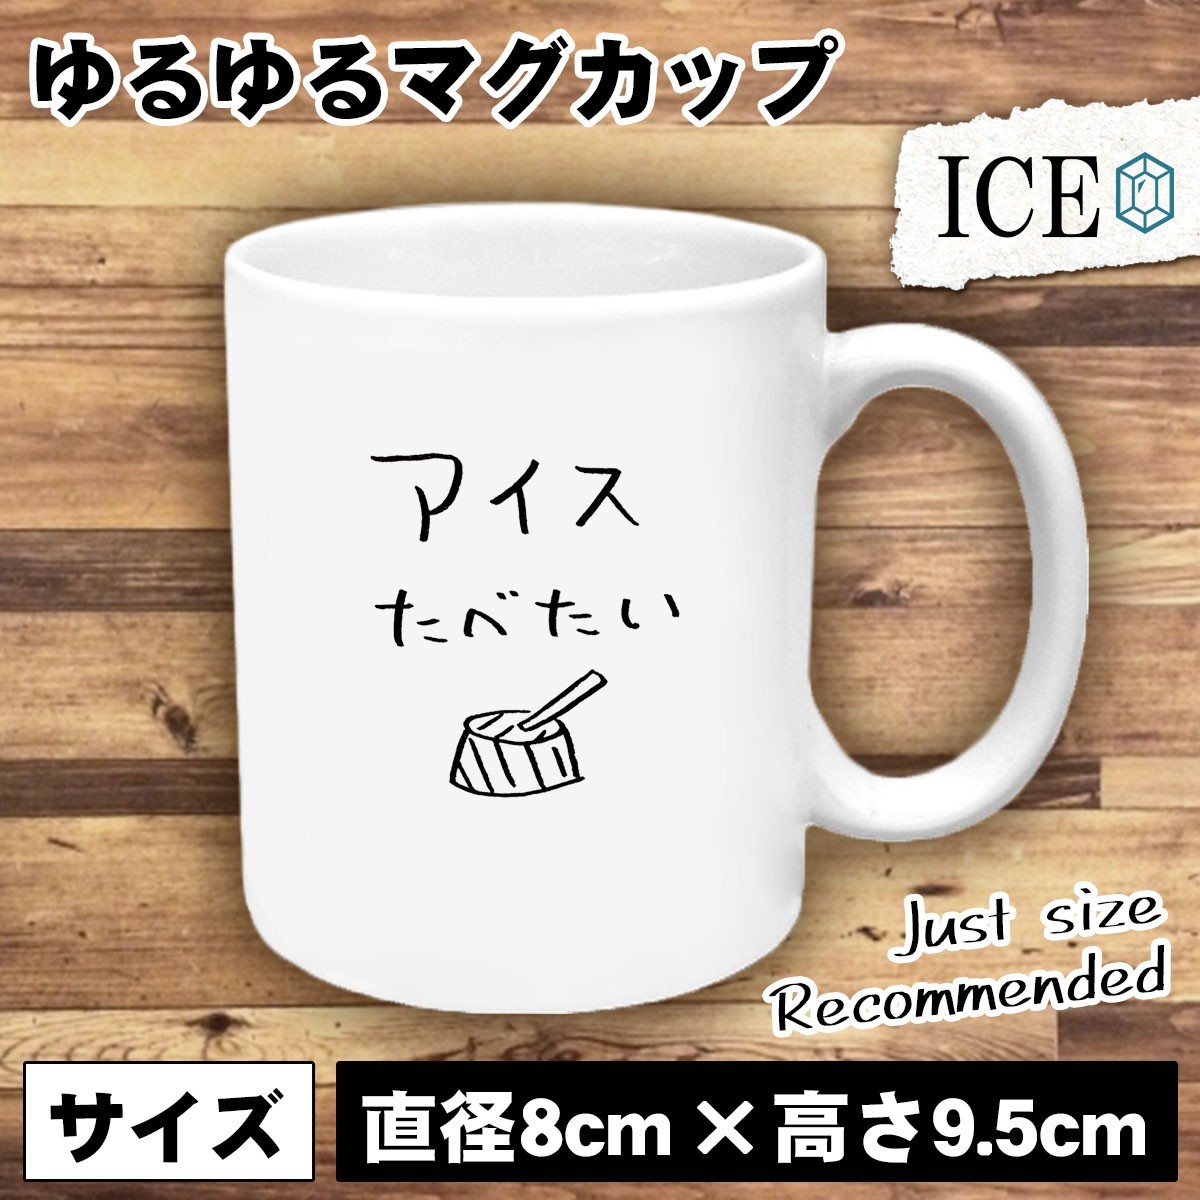 アイス おもしろ マグカップ コップ アイスクリーム ice ピノ 陶器 可愛い かわいい 白 シンプル かわいい カッコイイ シュール 面白い ジ_画像1